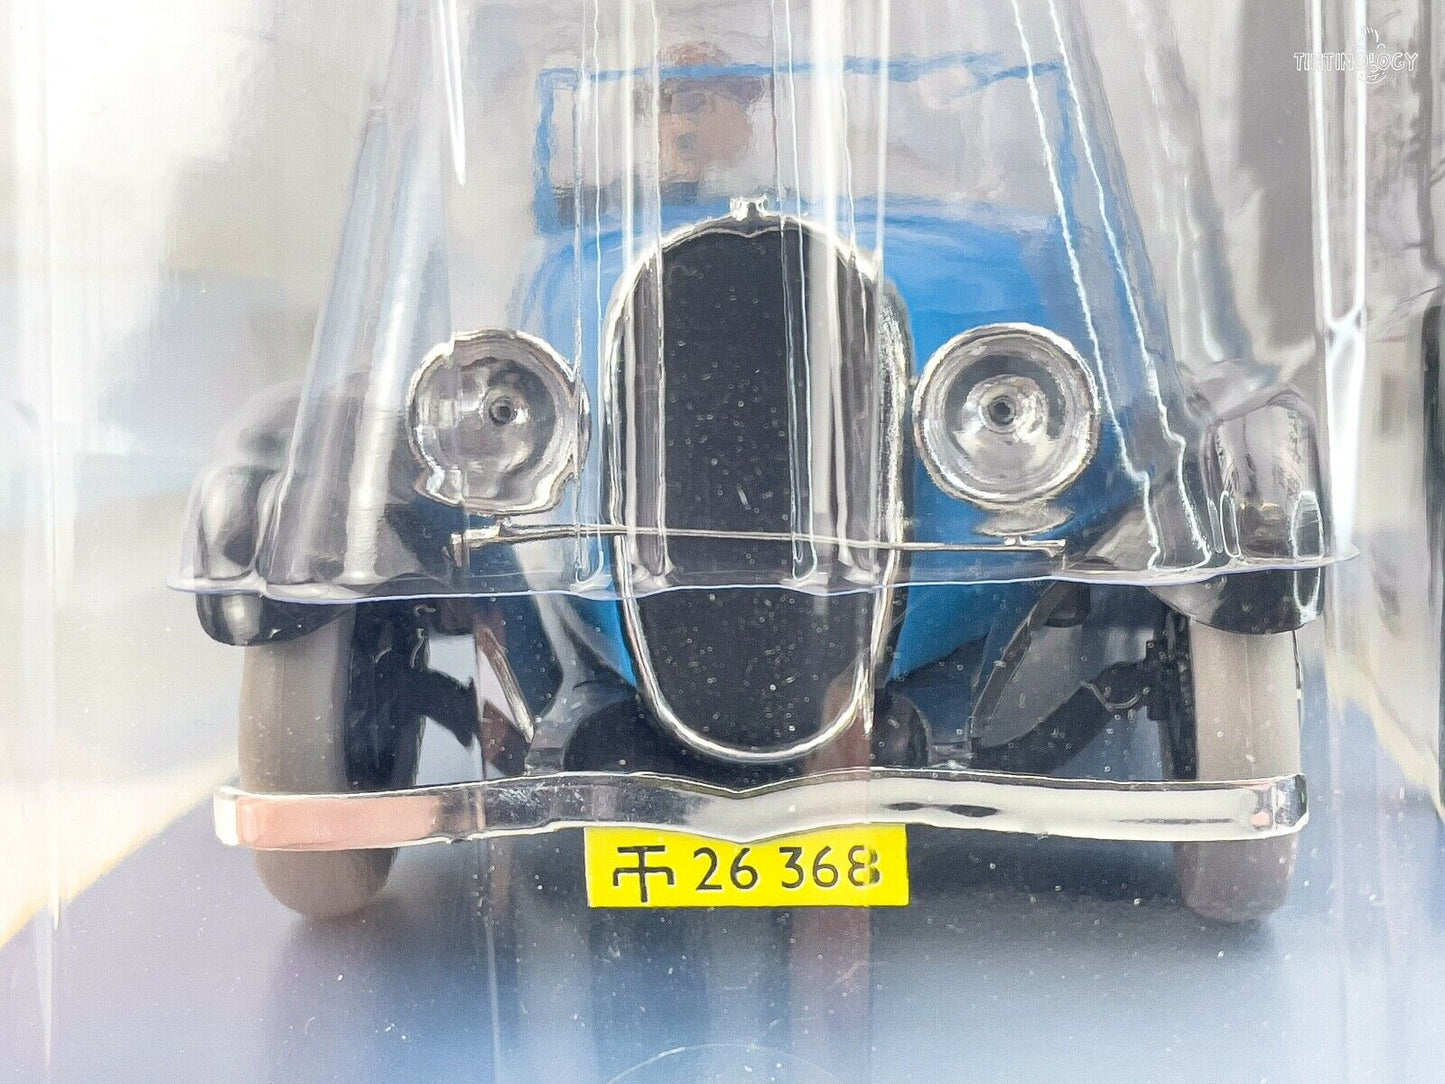 HACHETTE Tintin Car 1/24 # 46 Decapotable - Blue Lotus Rare Model Voiture Figure